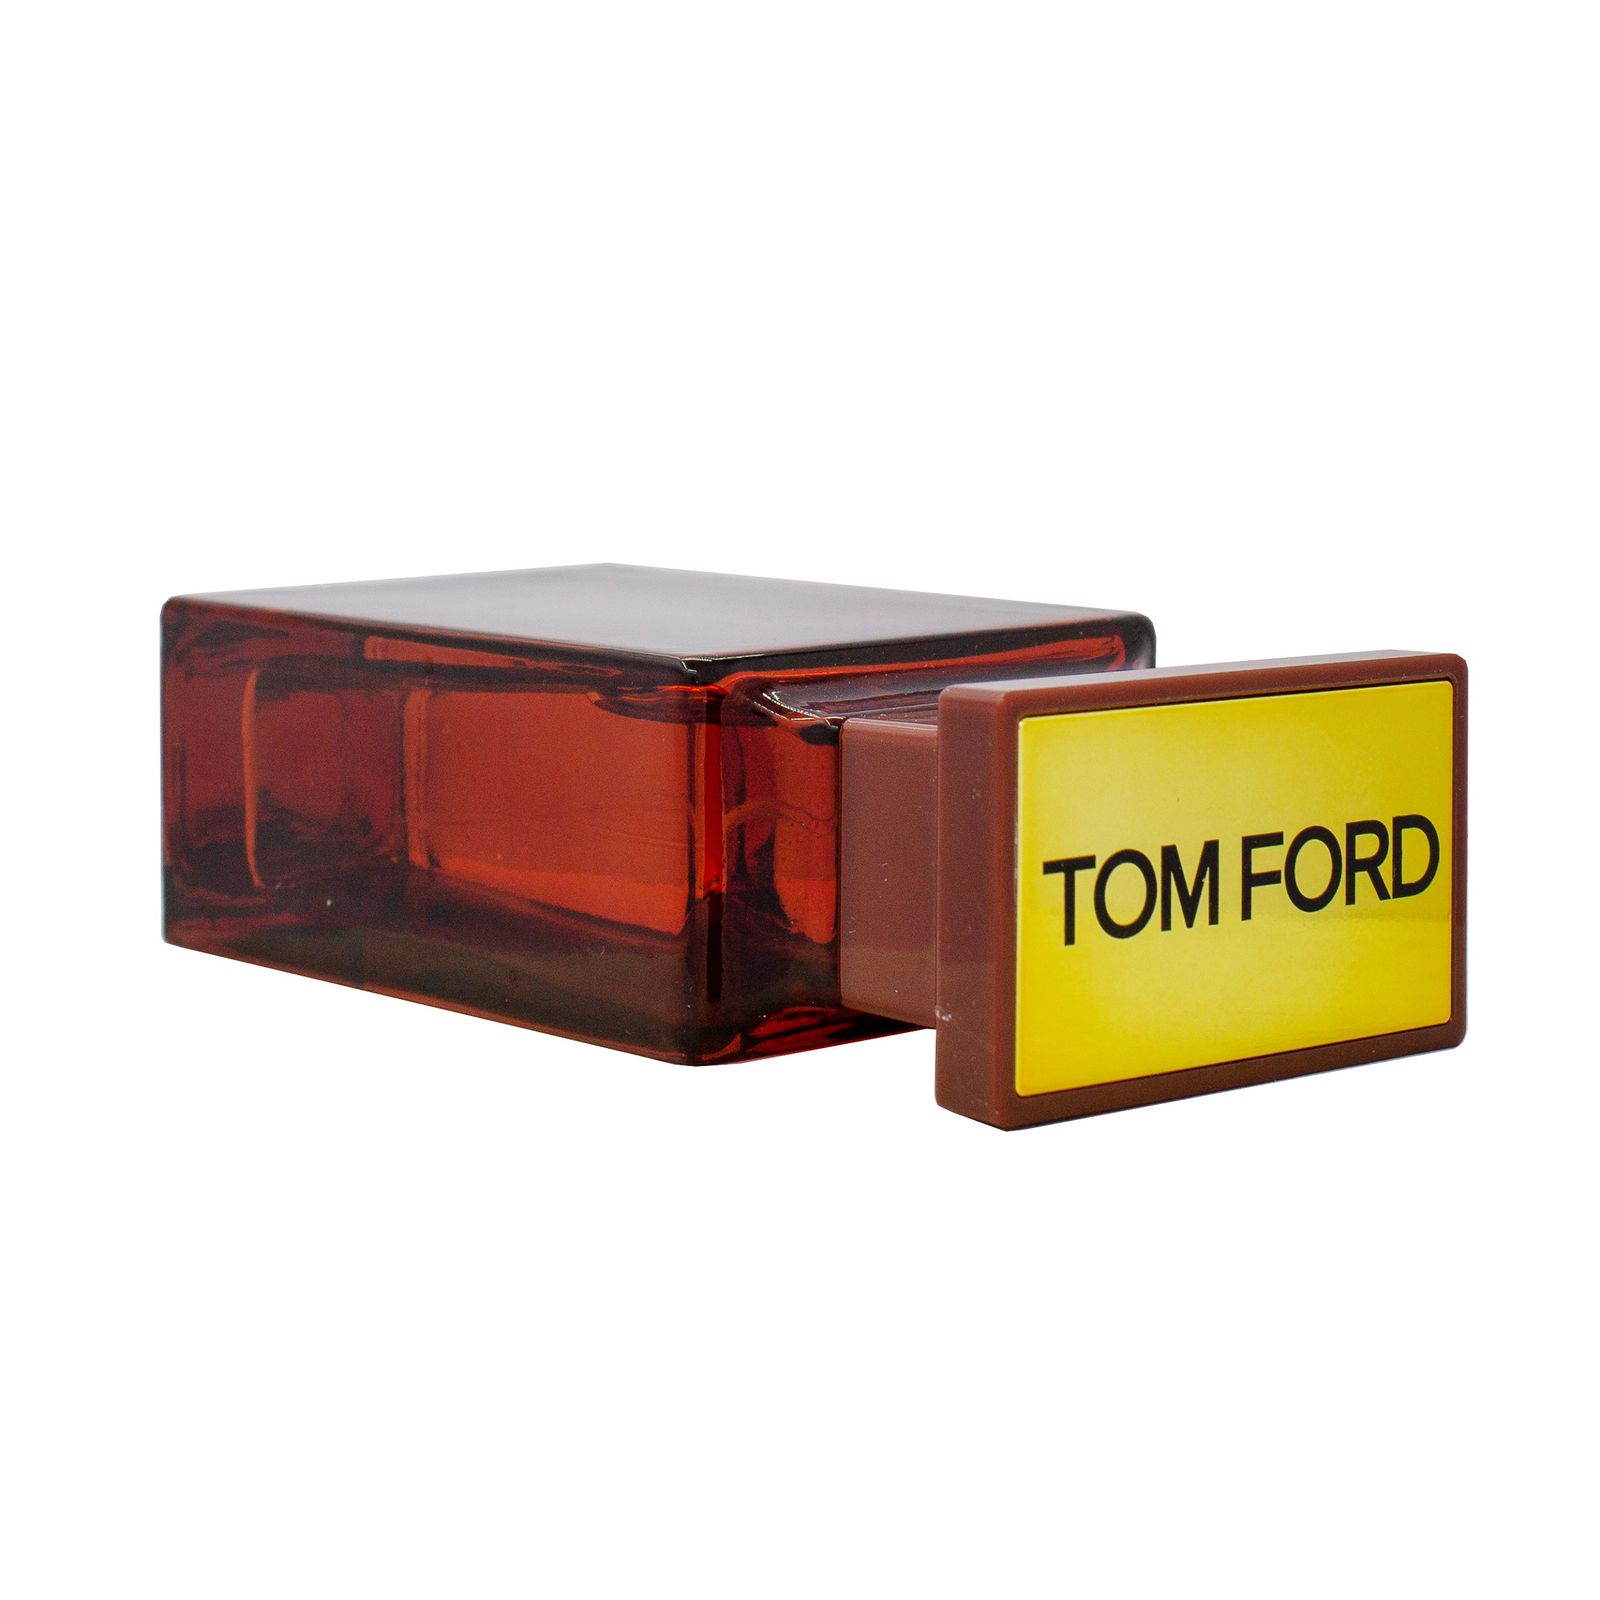 ادو پرفیوم مردانه اسکلاره مدل Tom Ford Tuscan Leather حجم 100 میلی لیتر -  - 2